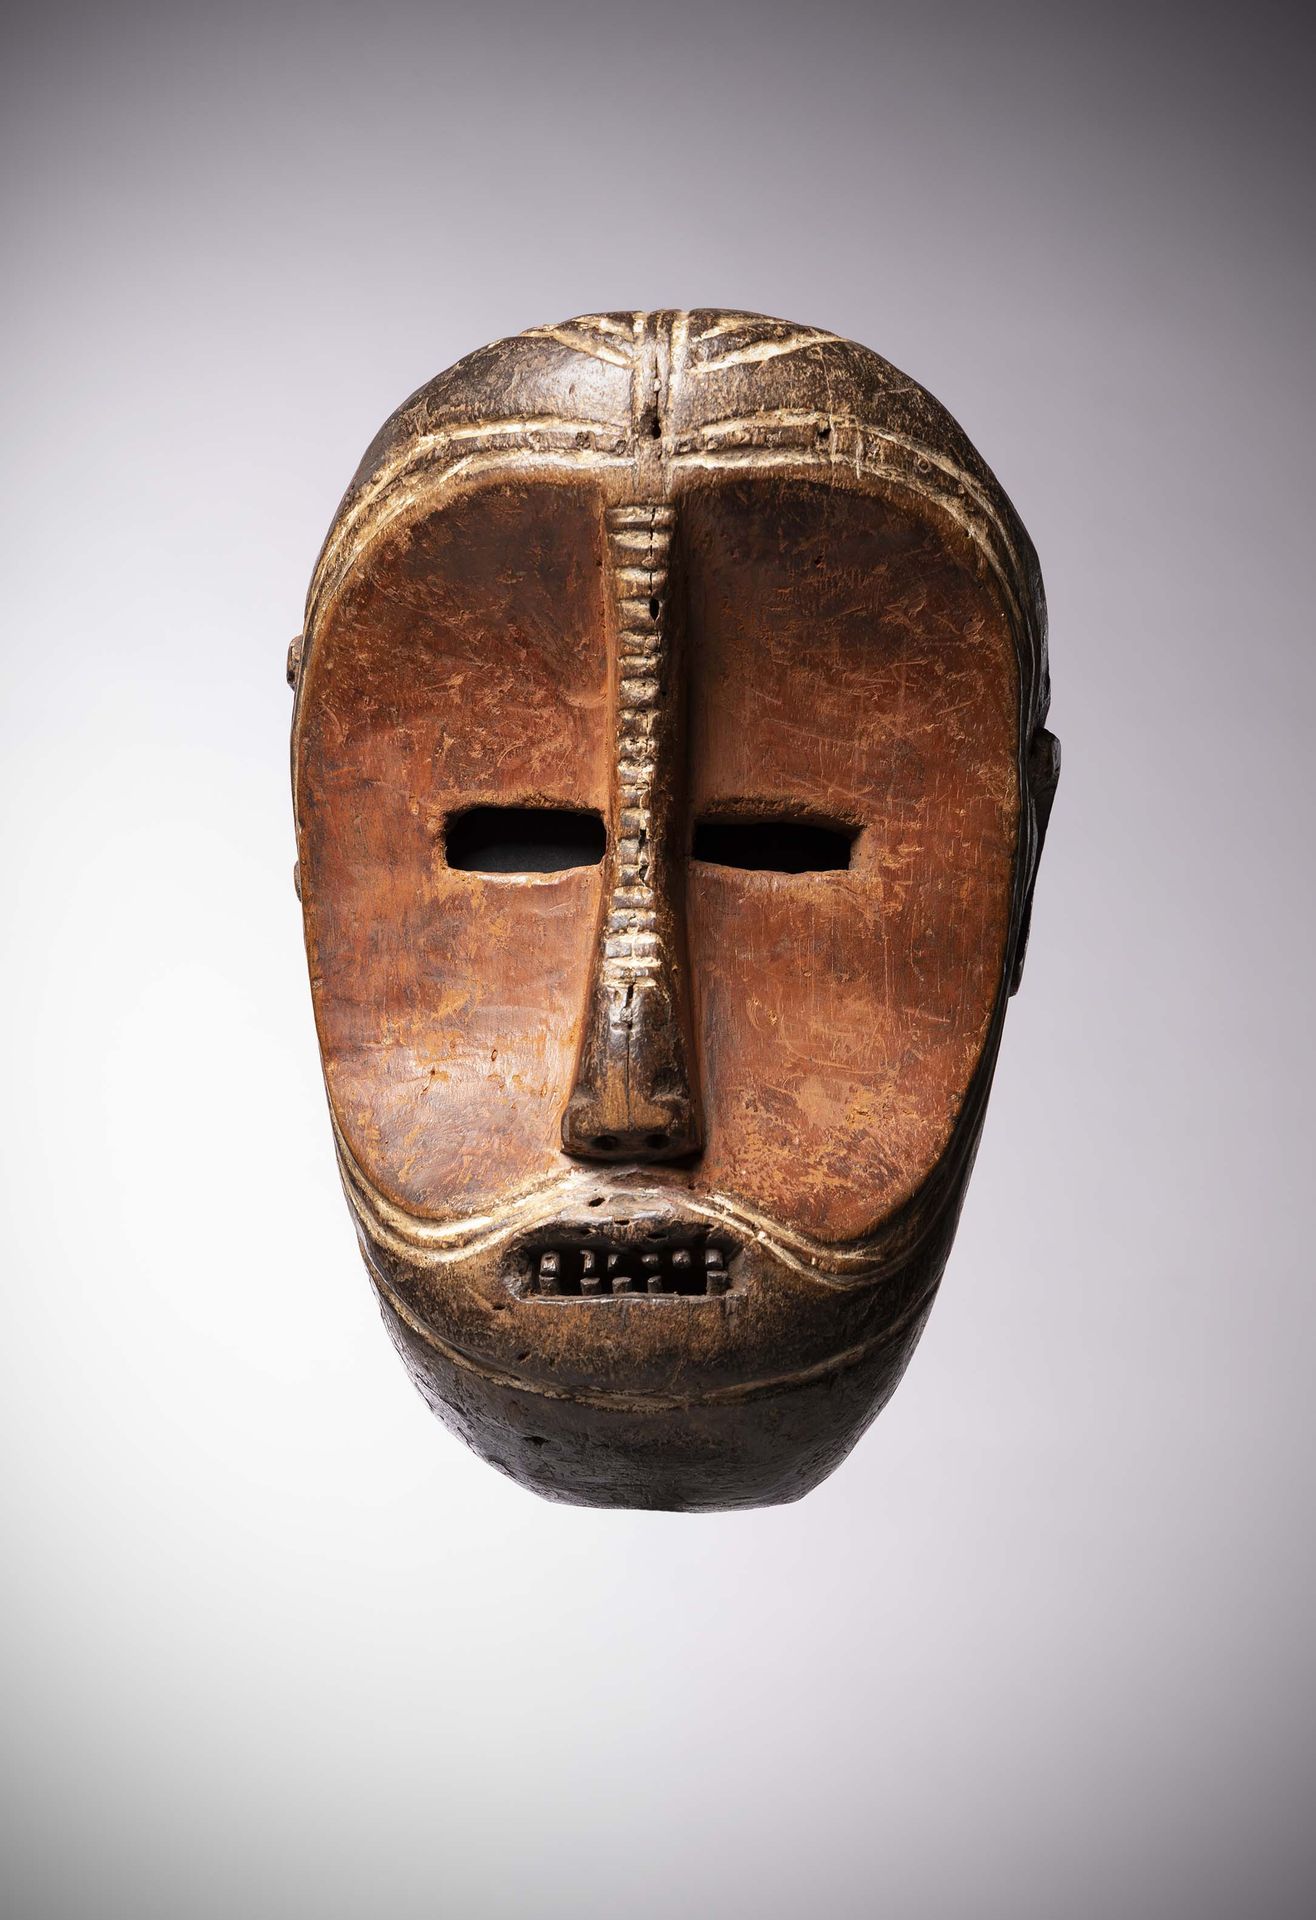 Null Bwaka

(DRK) Sehr alte Maske mit konkavem Gesicht, das mit ockerfarbenem Ng&hellip;